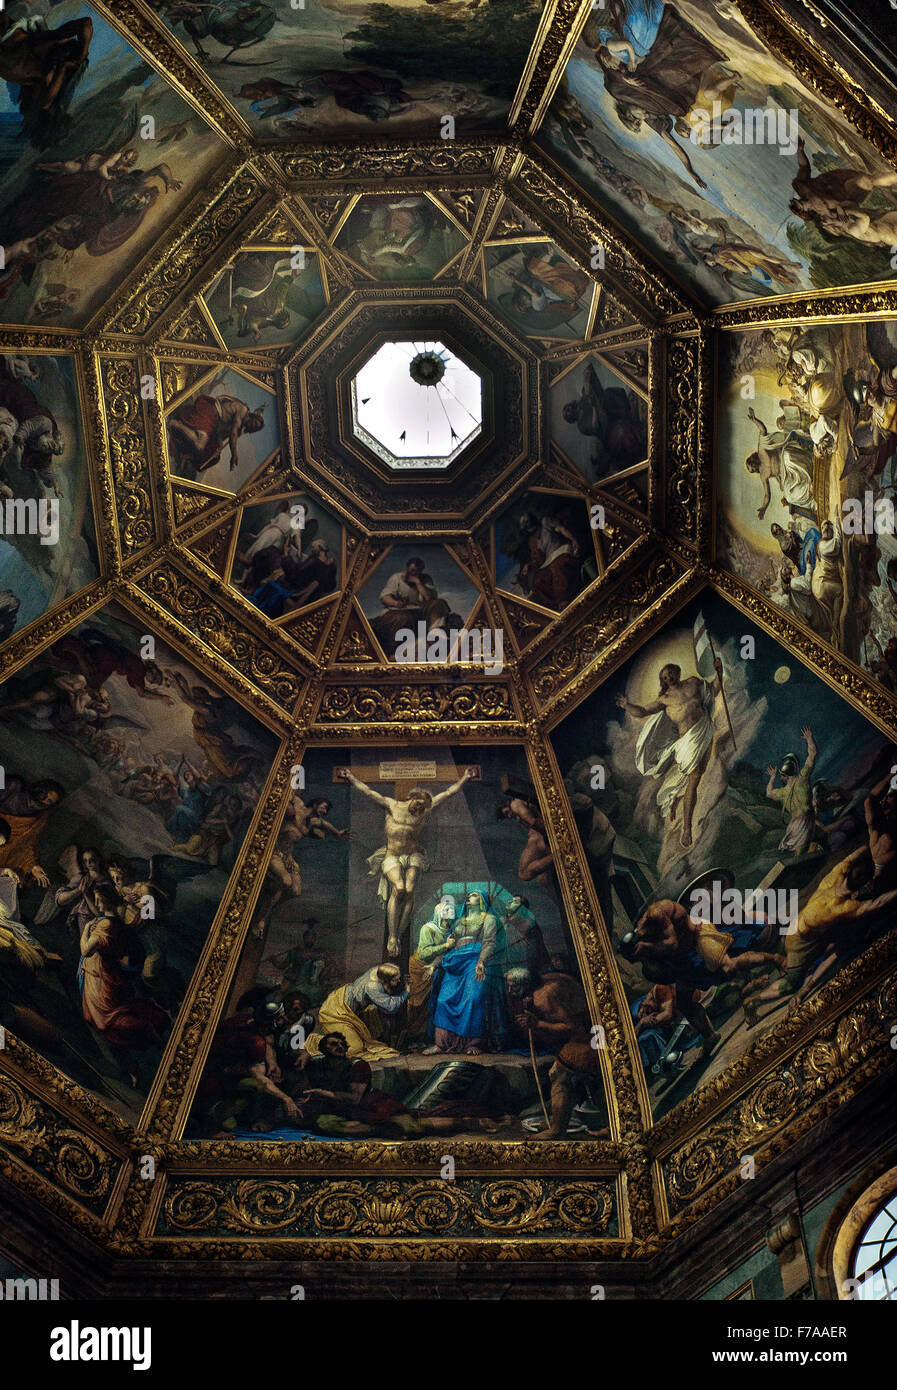 Medici bemalte Decke der Kapelle der Fürsten. Architekt: Matteo Nagetti und Bernardo Buontalenti Medici-Kapellen, Florenz Stockfoto